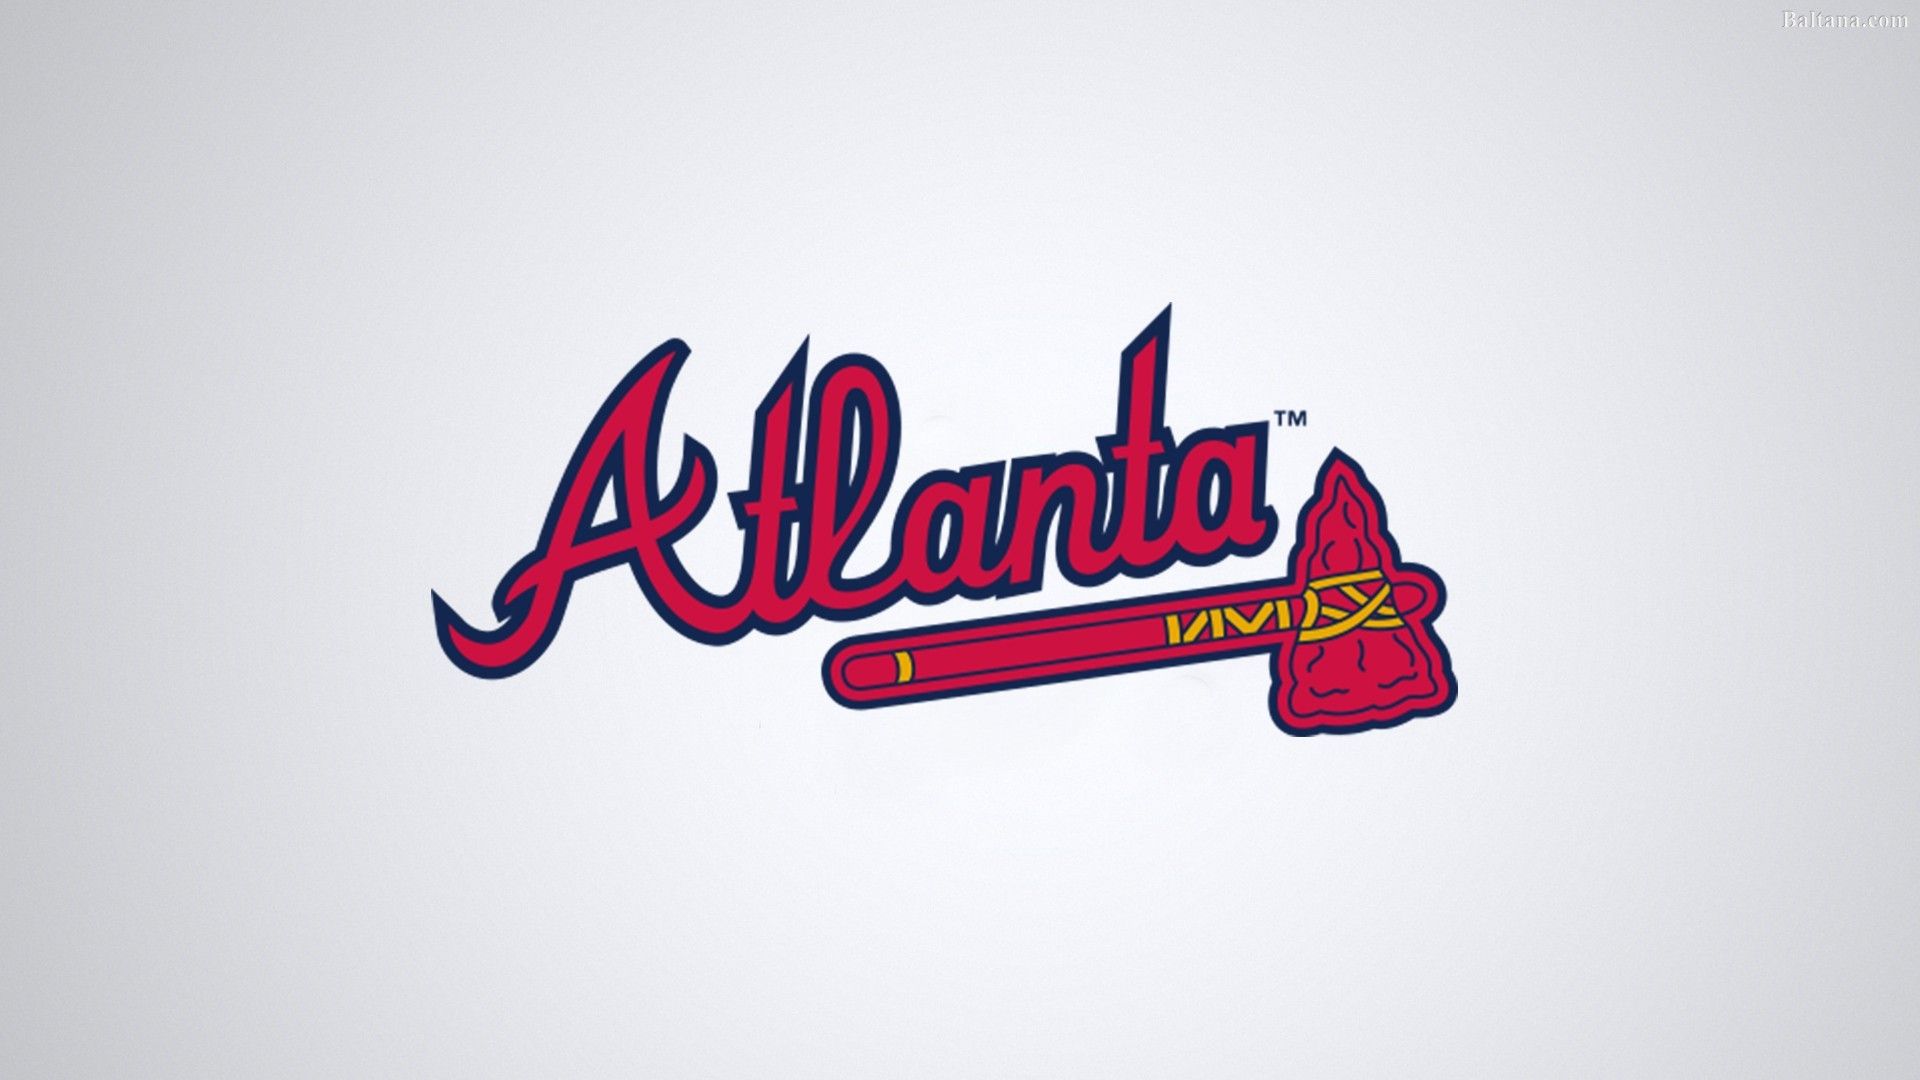 Atlanta Braves Wallpaper iPhone